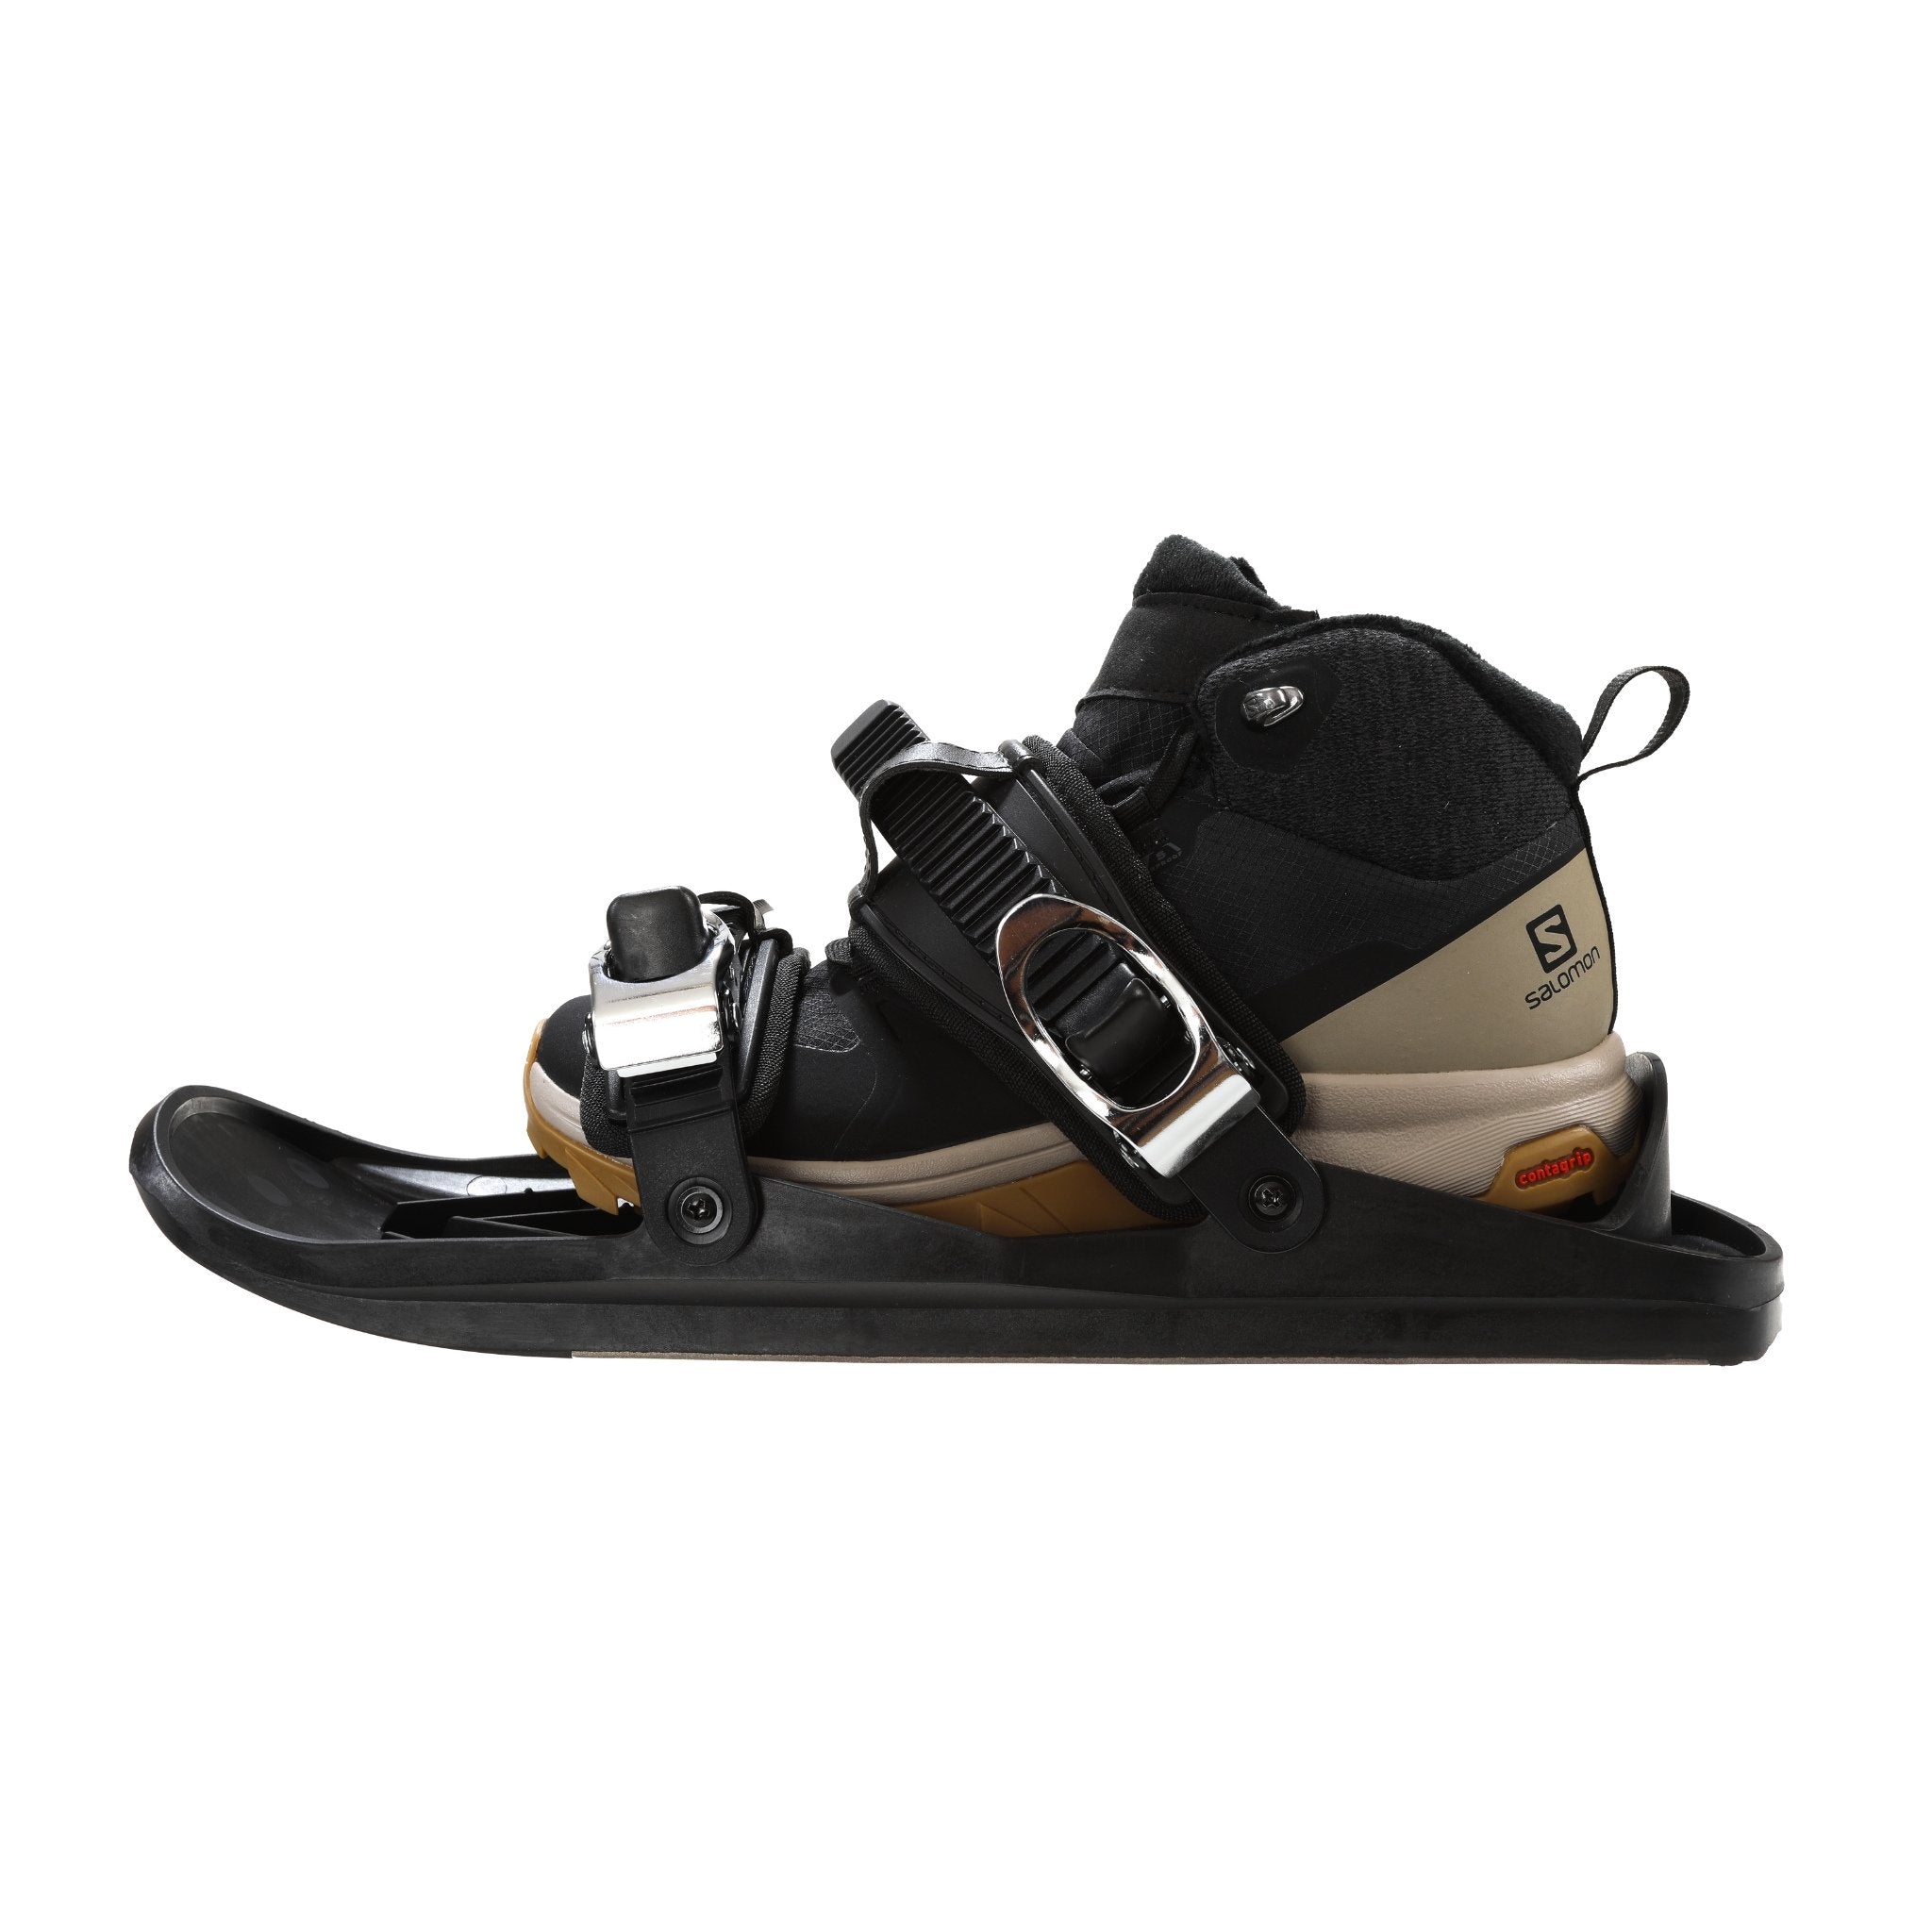 Snowfeet - Mini skis, skates for snow, skiskates, one size fits all, small shoe.